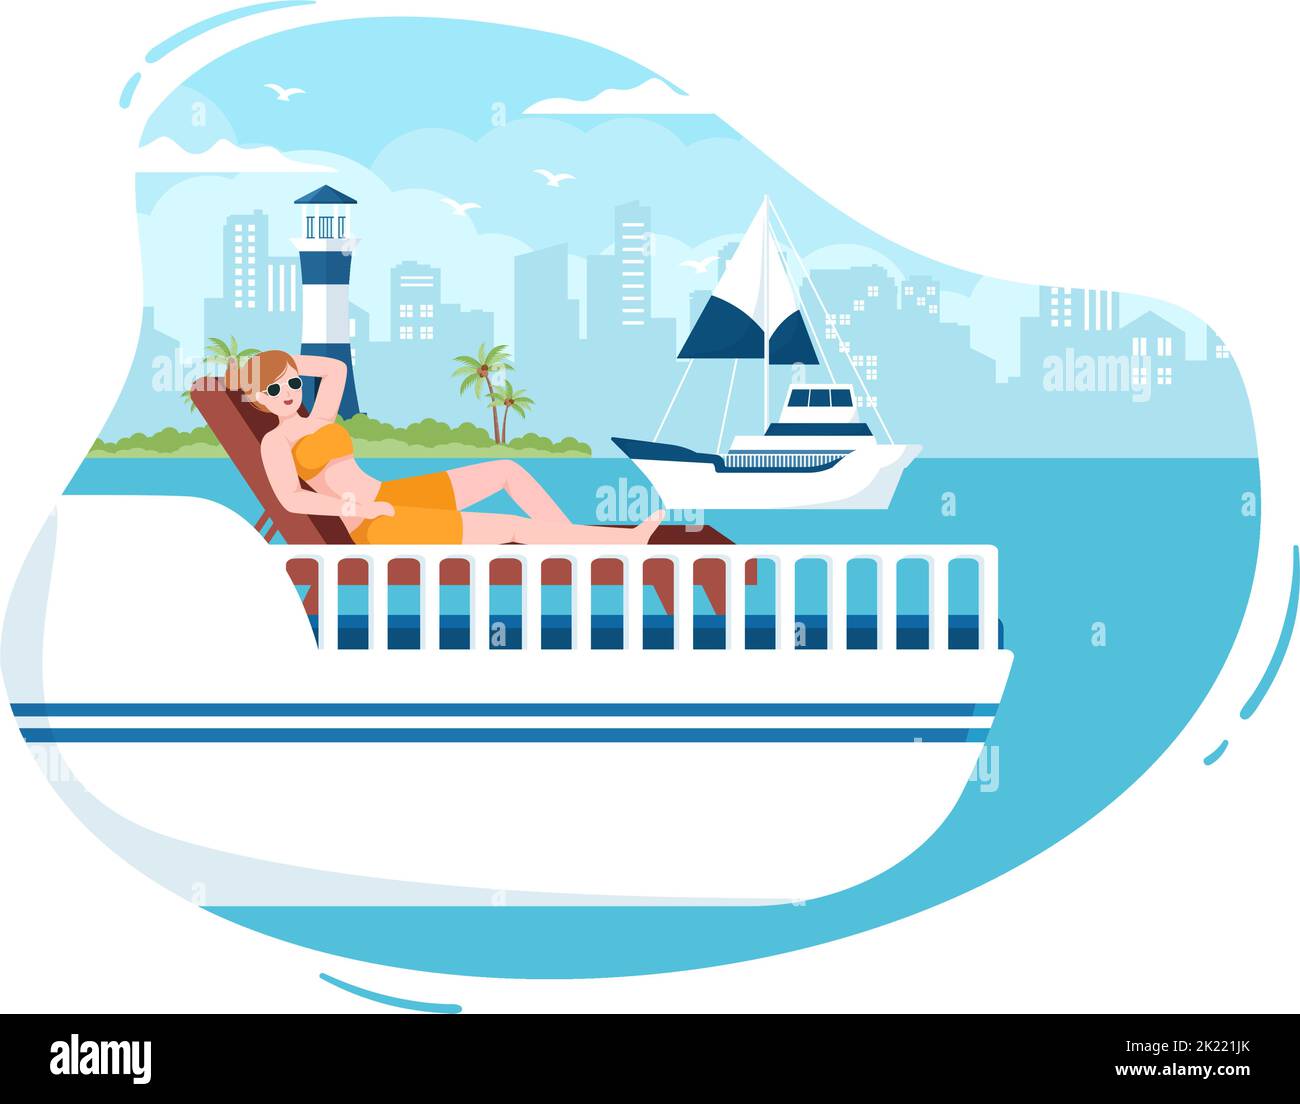 Yachten Vorlage Handgezeichnete Cartoon flache Illustration mit Menschen Tanzen, Sonnenbaden, Cocktails trinken und entspannen auf der Kreuzfahrt-Yacht am Ozean Stock Vektor